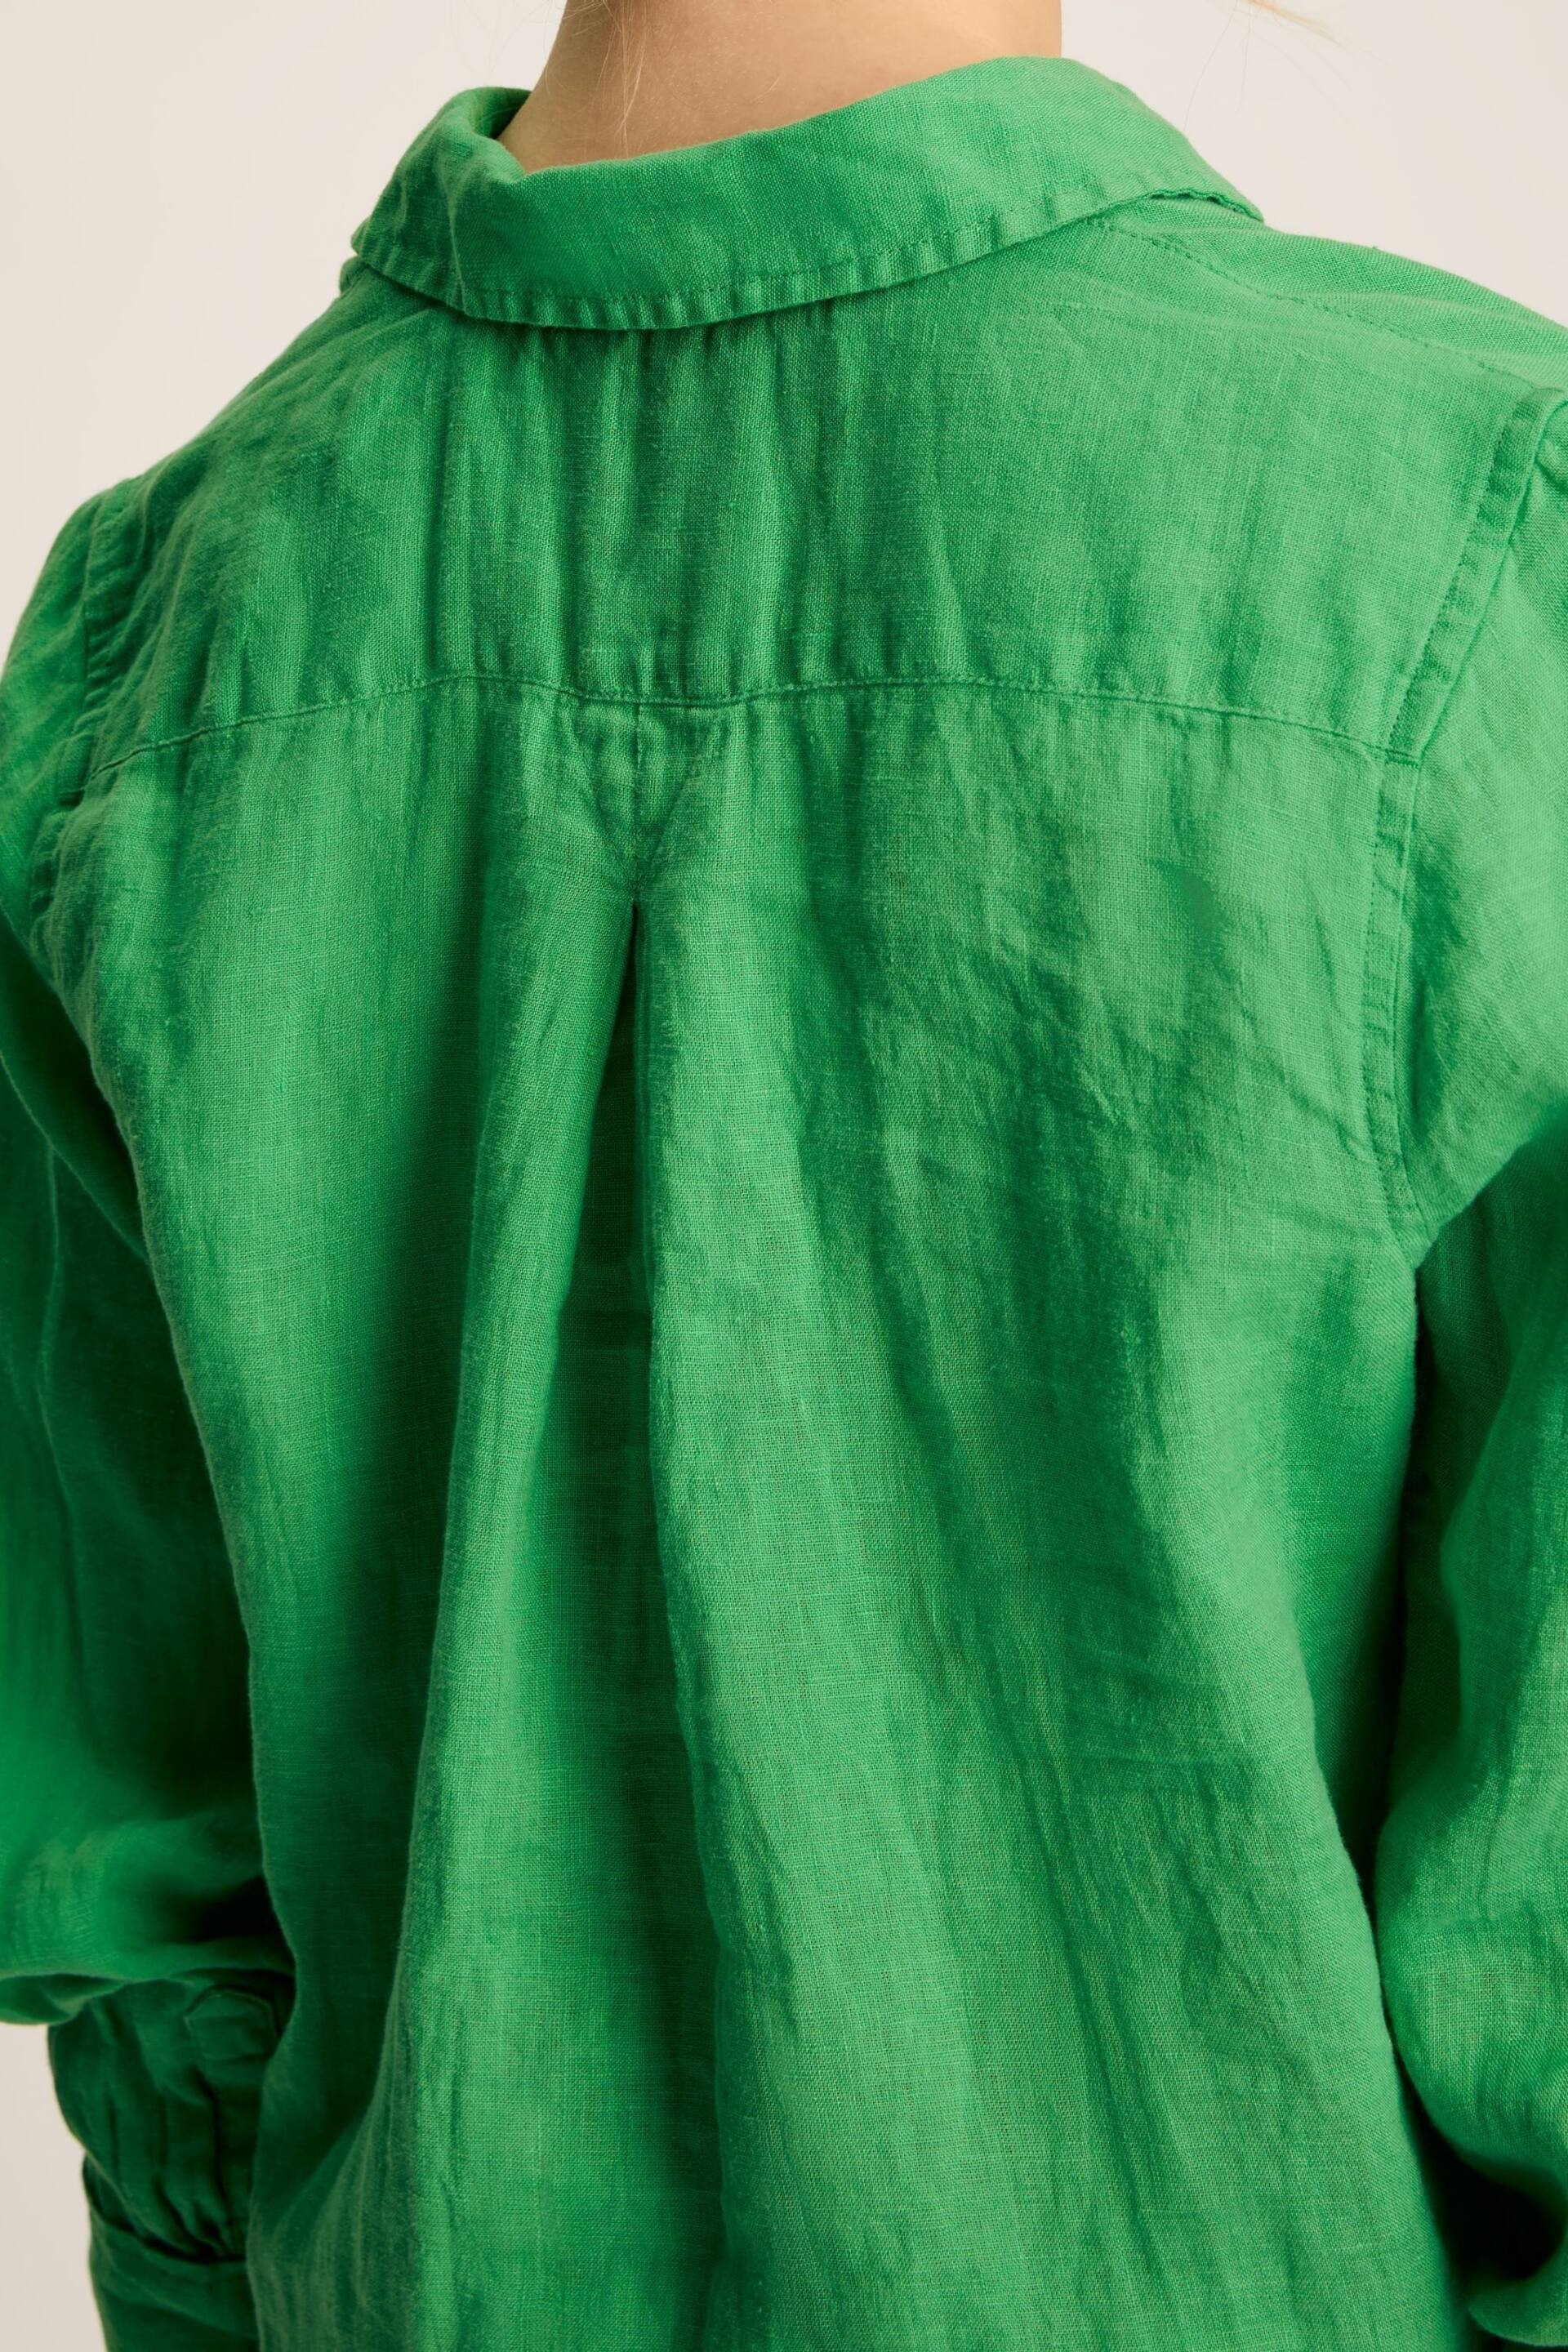 Joules Selene Green 100% Linen Shirt - Image 4 of 6